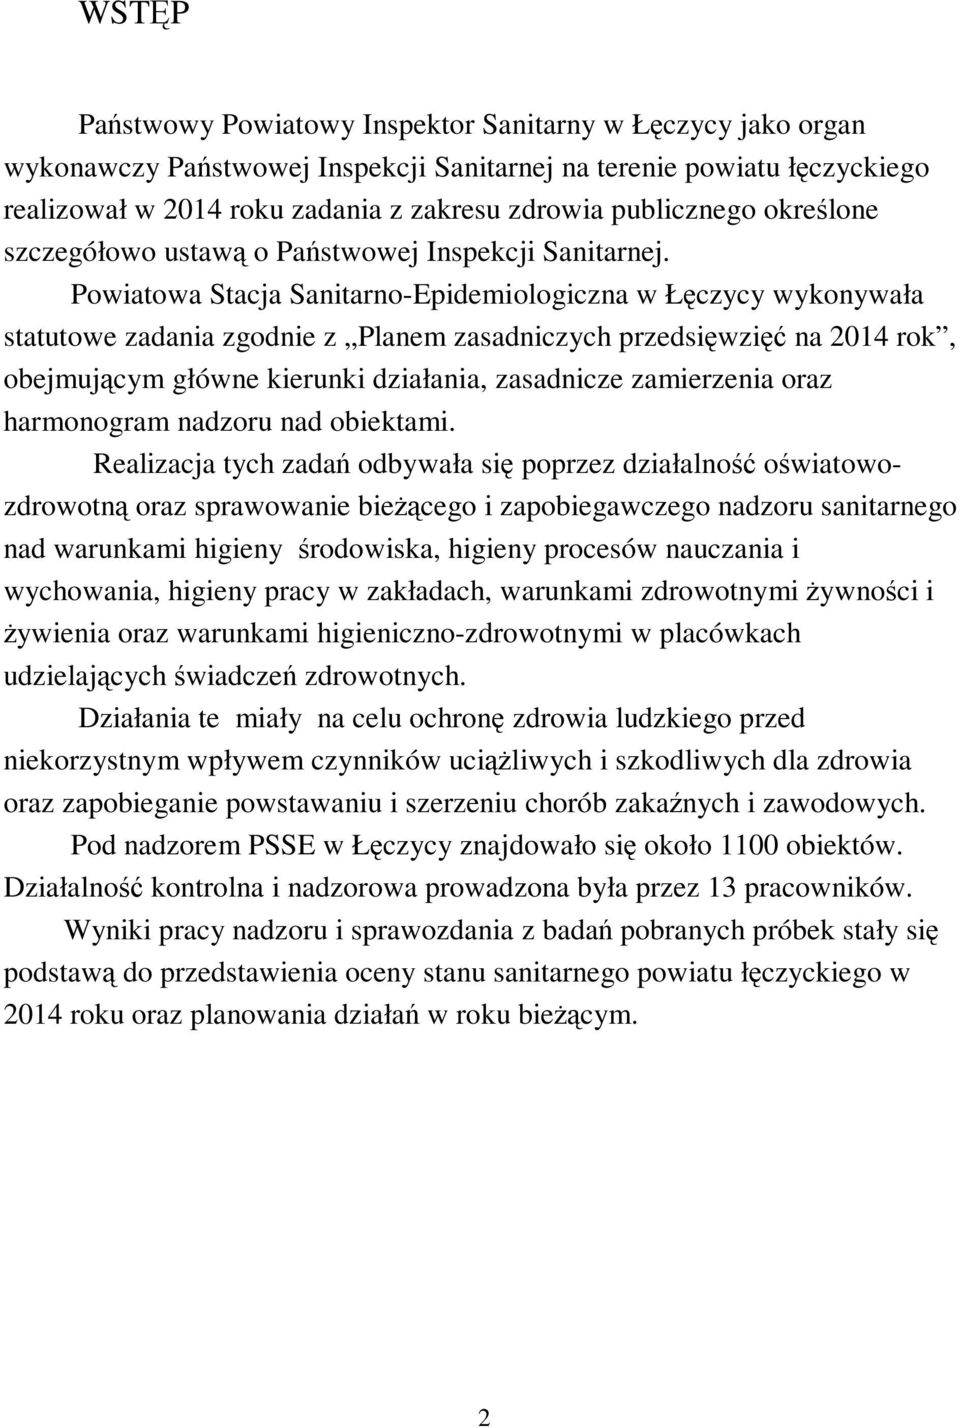 Powiatowa Stacja Sanitarno-Epidemiologiczna w Łęczycy wykonywała statutowe zadania zgodnie z Planem zasadniczych przedsięwzięć na 2014 rok, obejmującym główne kierunki działania, zasadnicze